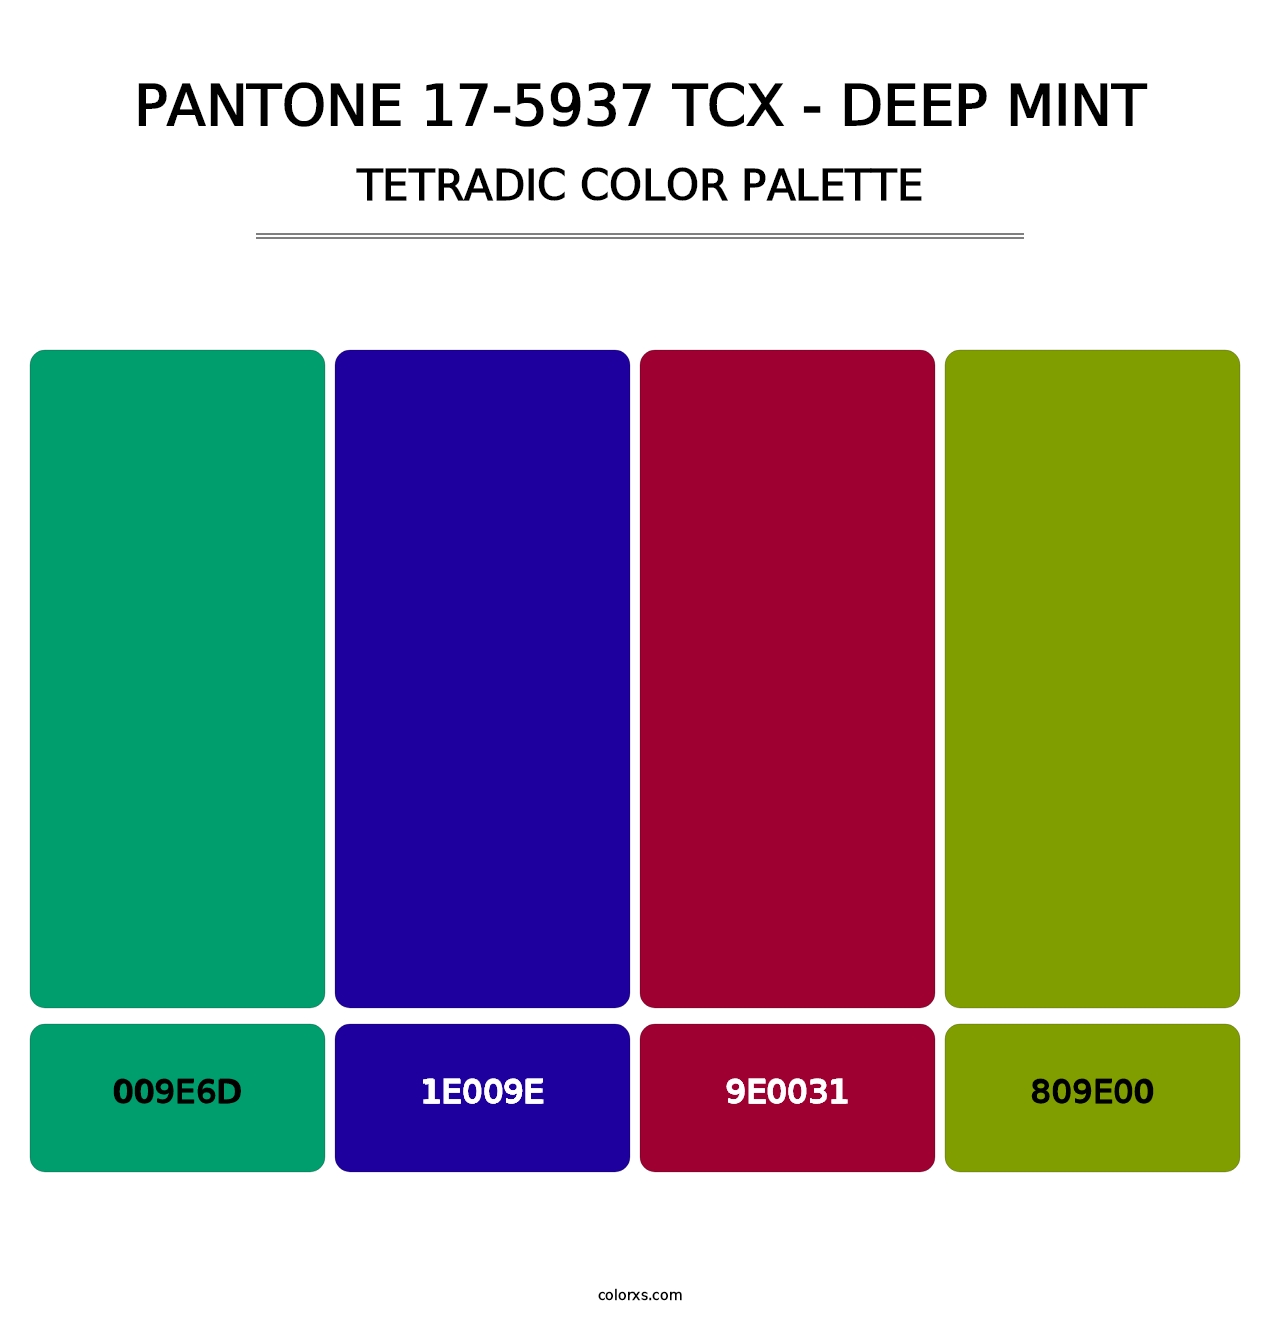 PANTONE 17-5937 TCX - Deep Mint - Tetradic Color Palette